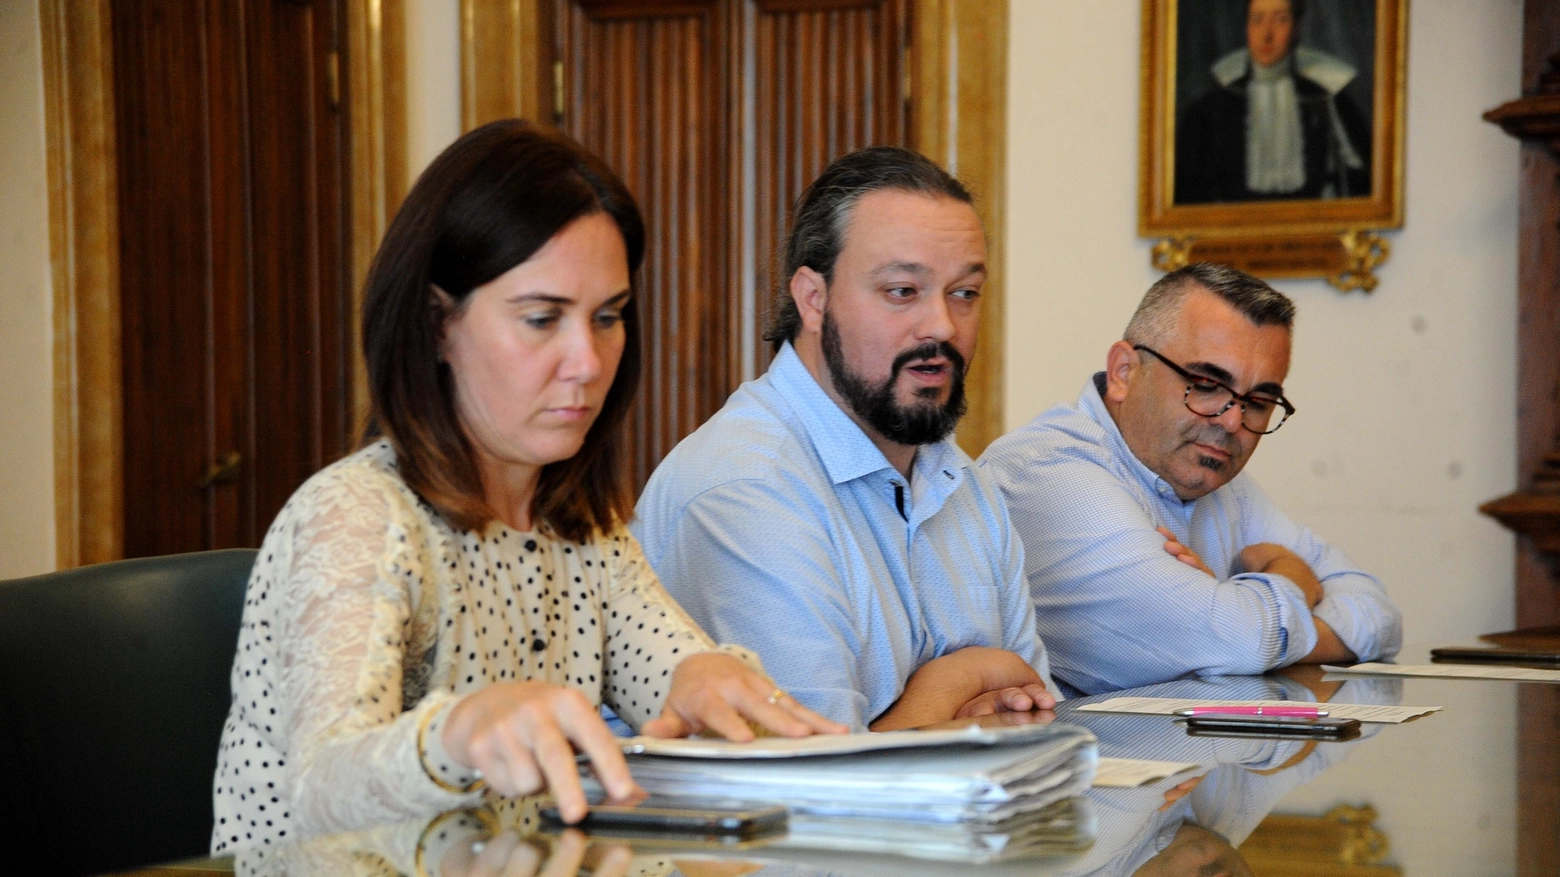 Cristina Coletti, Alan Fabbri e Nicola Lodi (Businesspress)